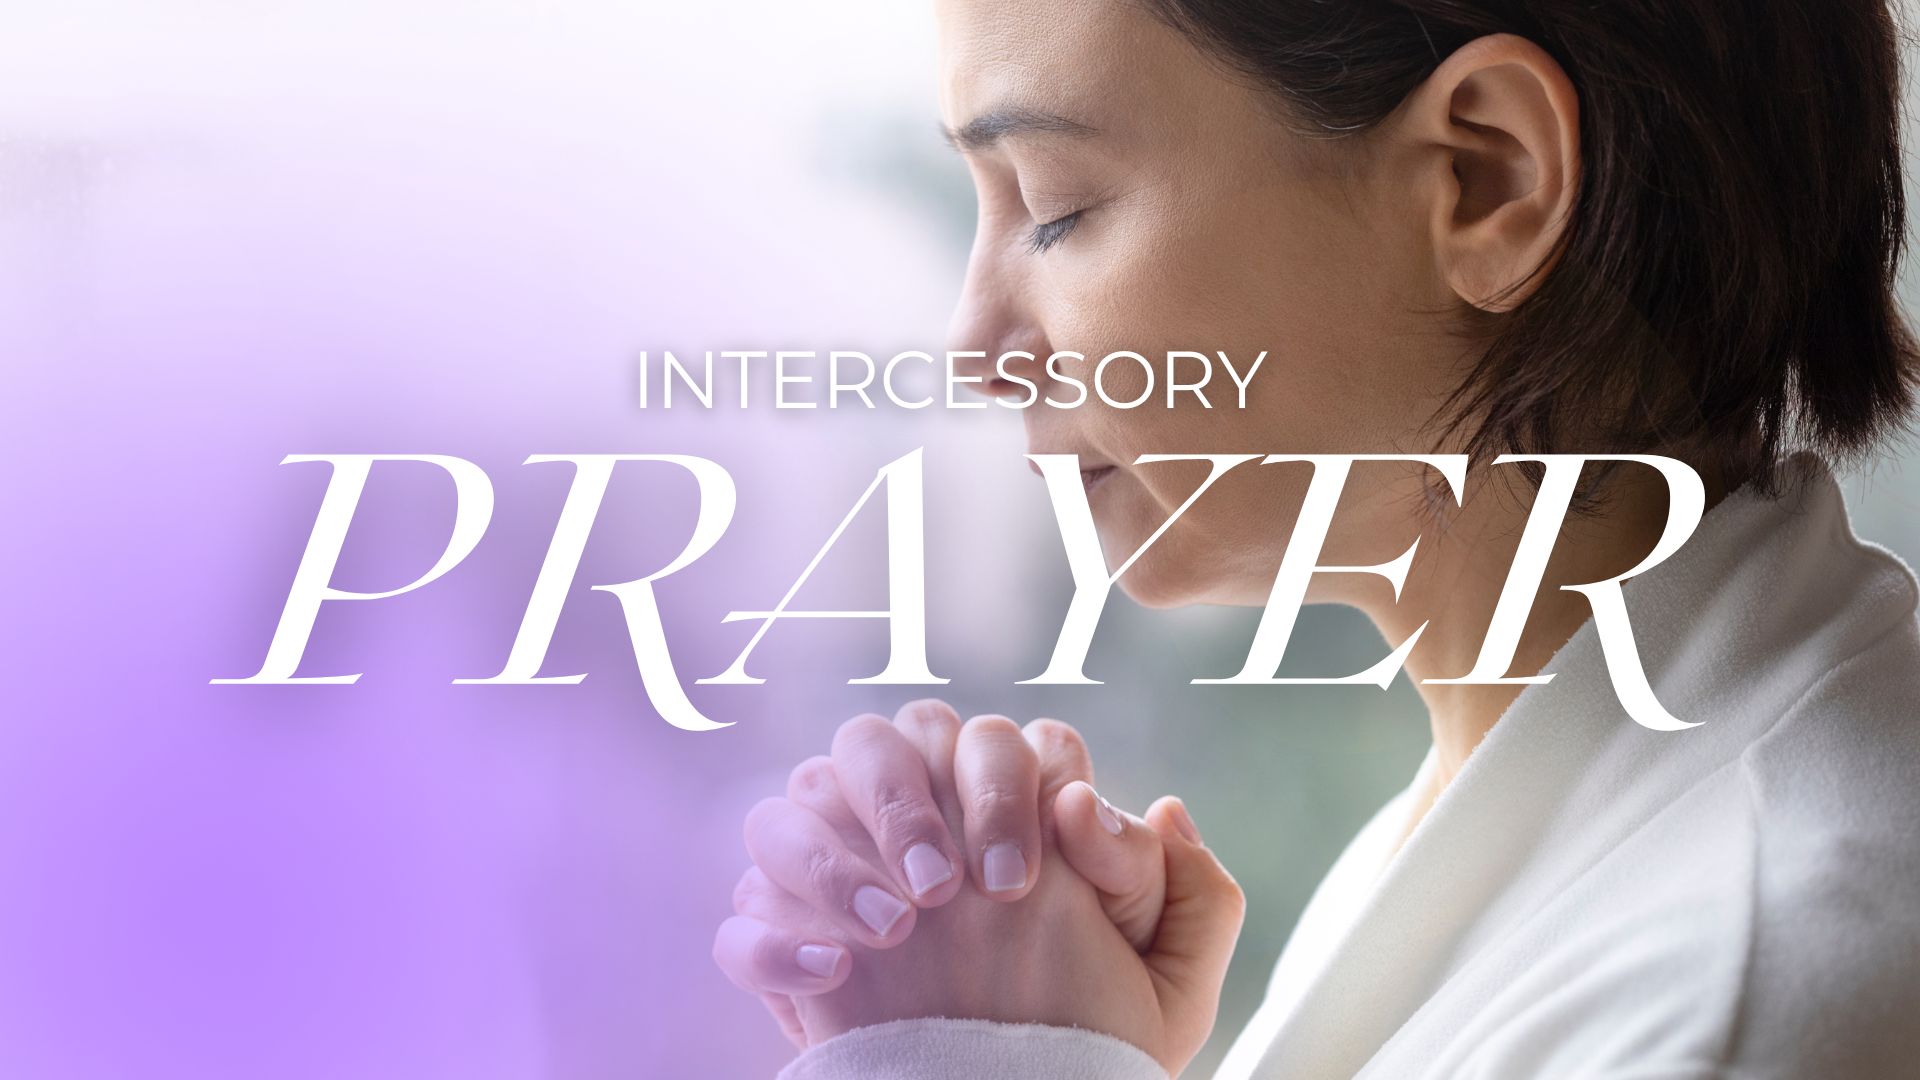 Intercessoty prayer hopefan